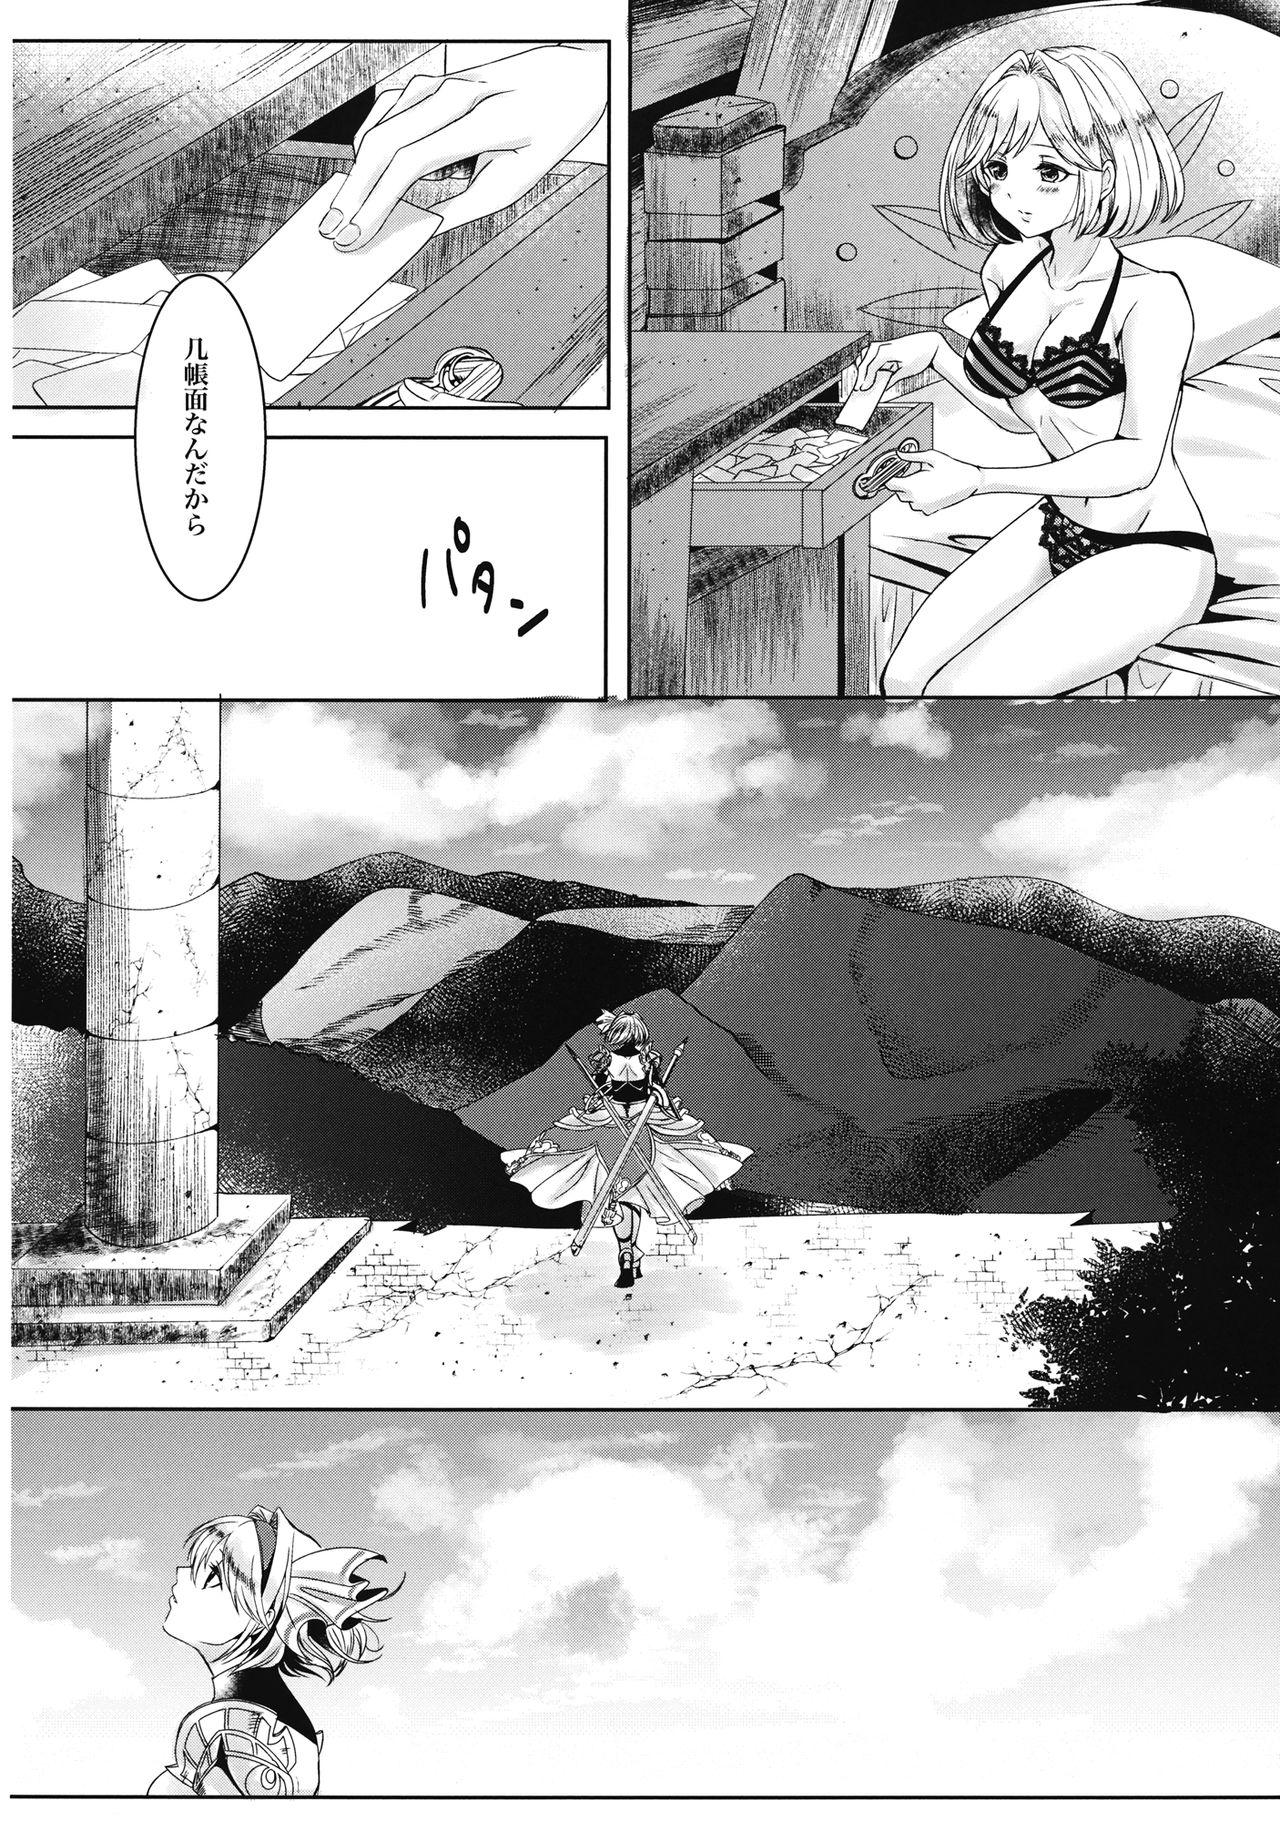 Plumper Mahiru no Hoshi wa Mienai - Granblue fantasy Putaria - Page 6